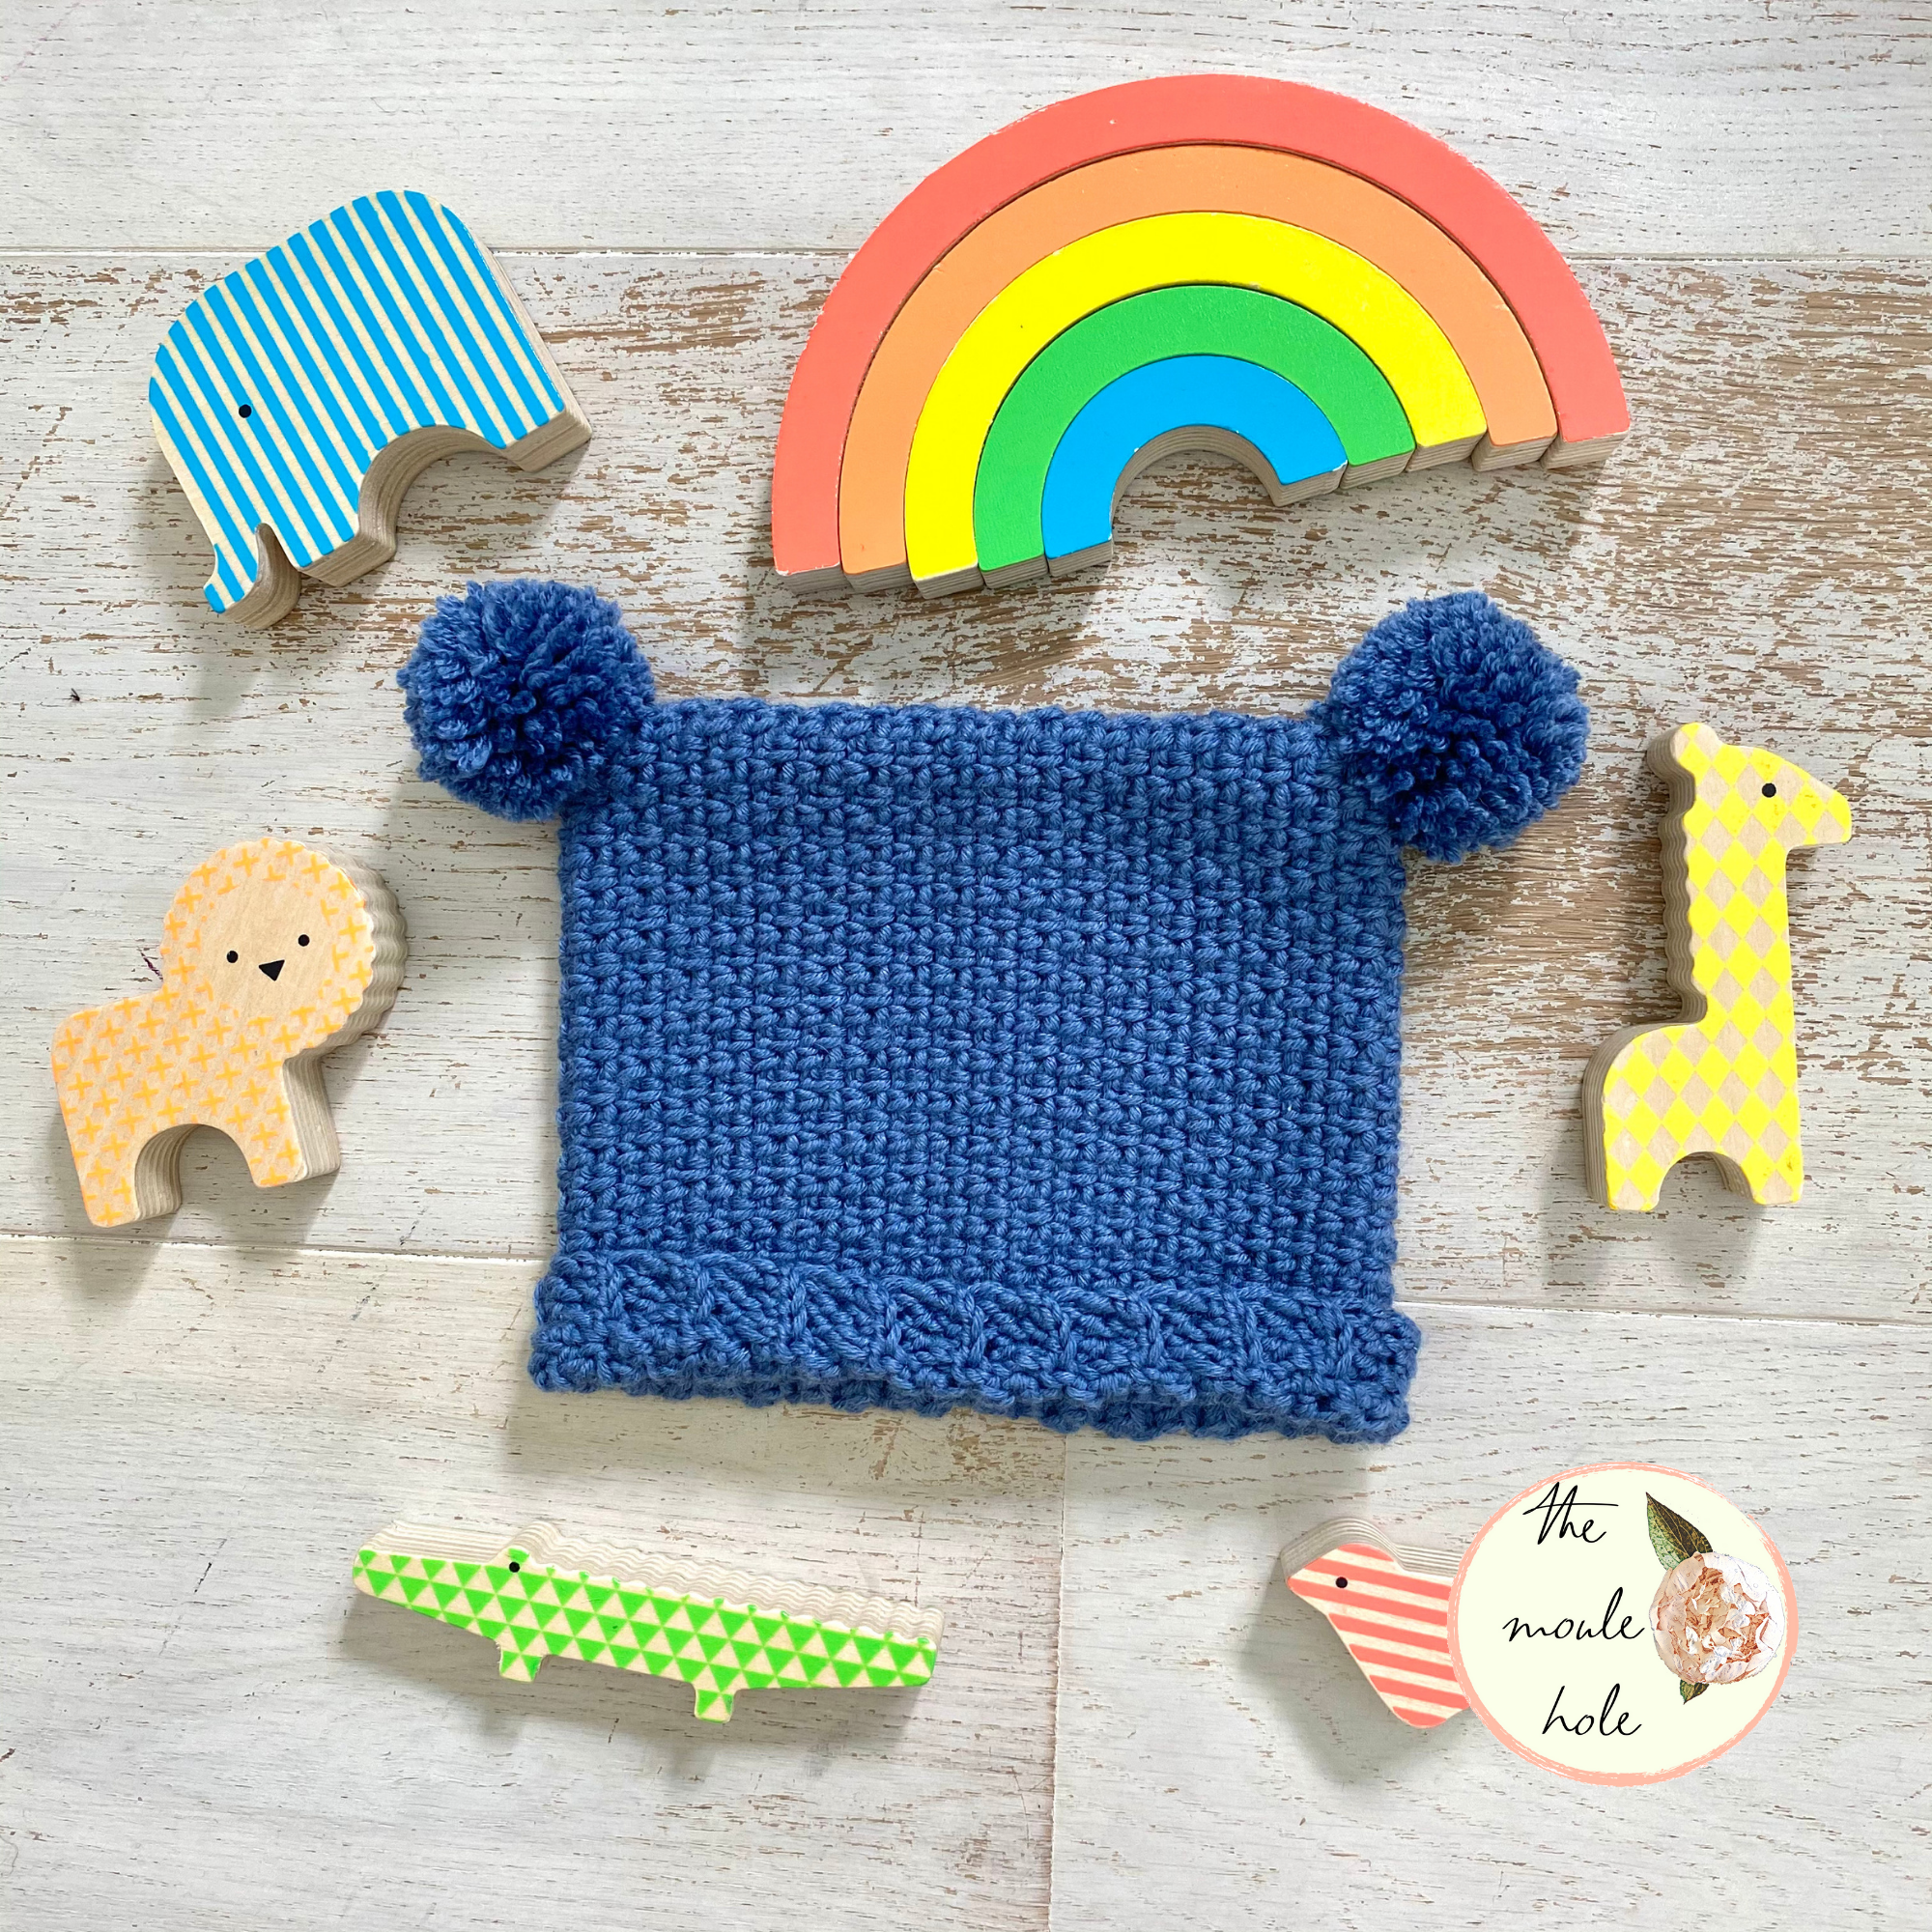 Mini Moule Beanie Crochet Pattern – The Moule Hole